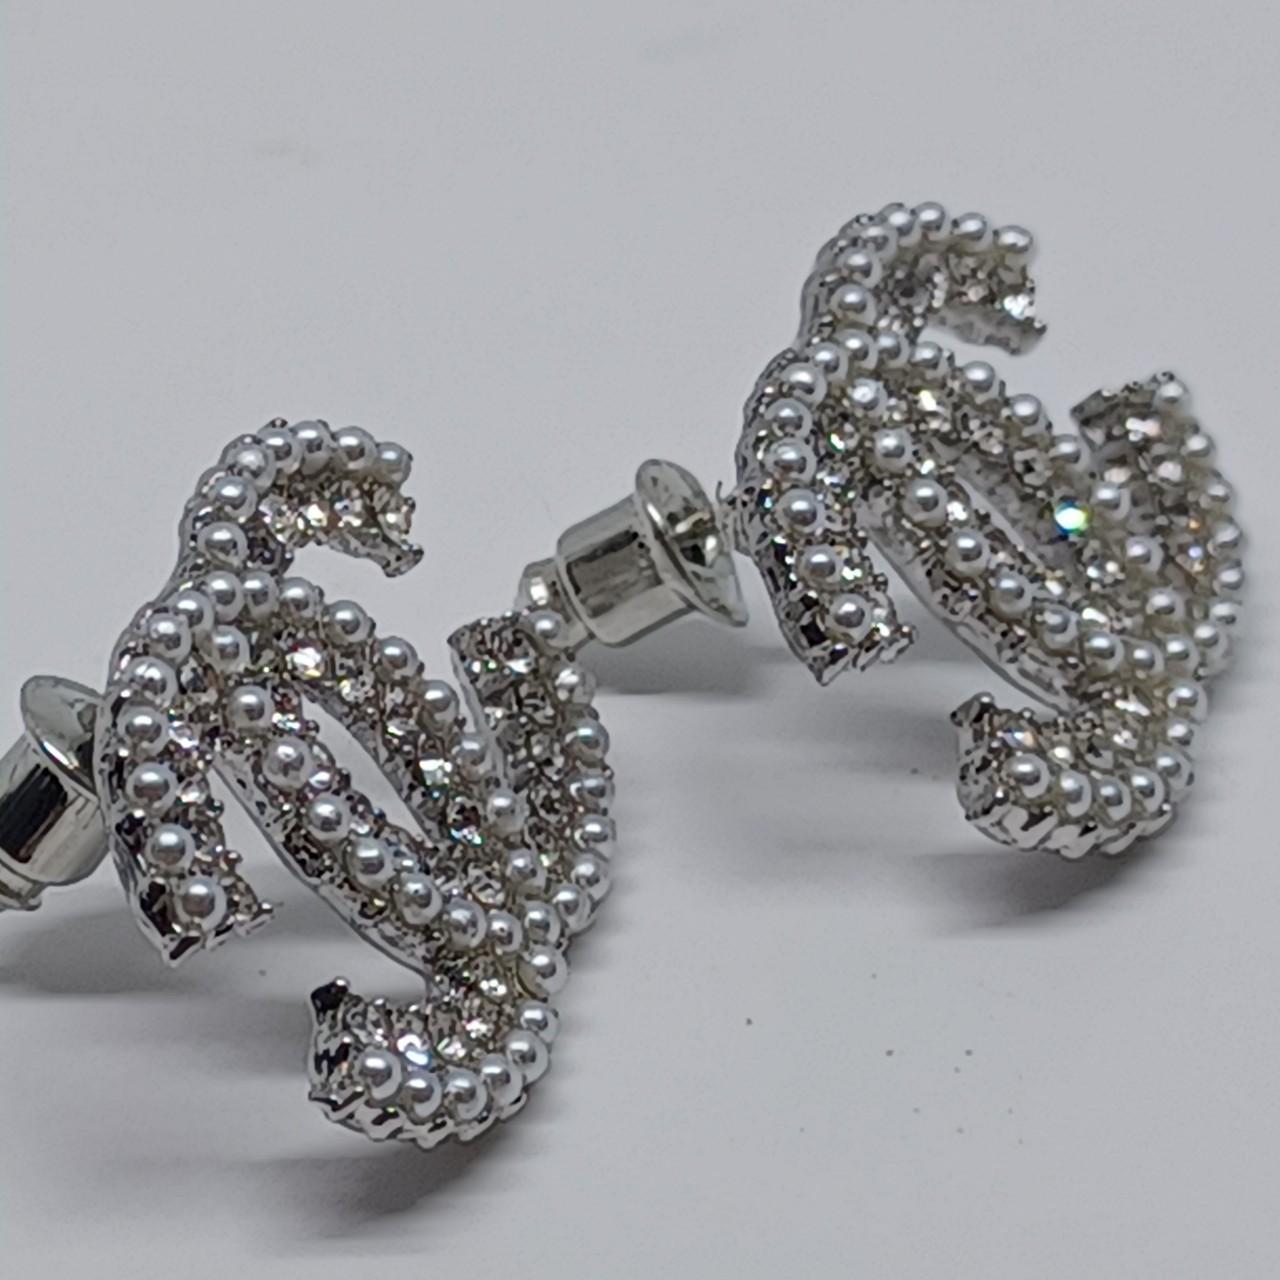 Rhinestone earrings jewelry New Comes from smoke - Depop